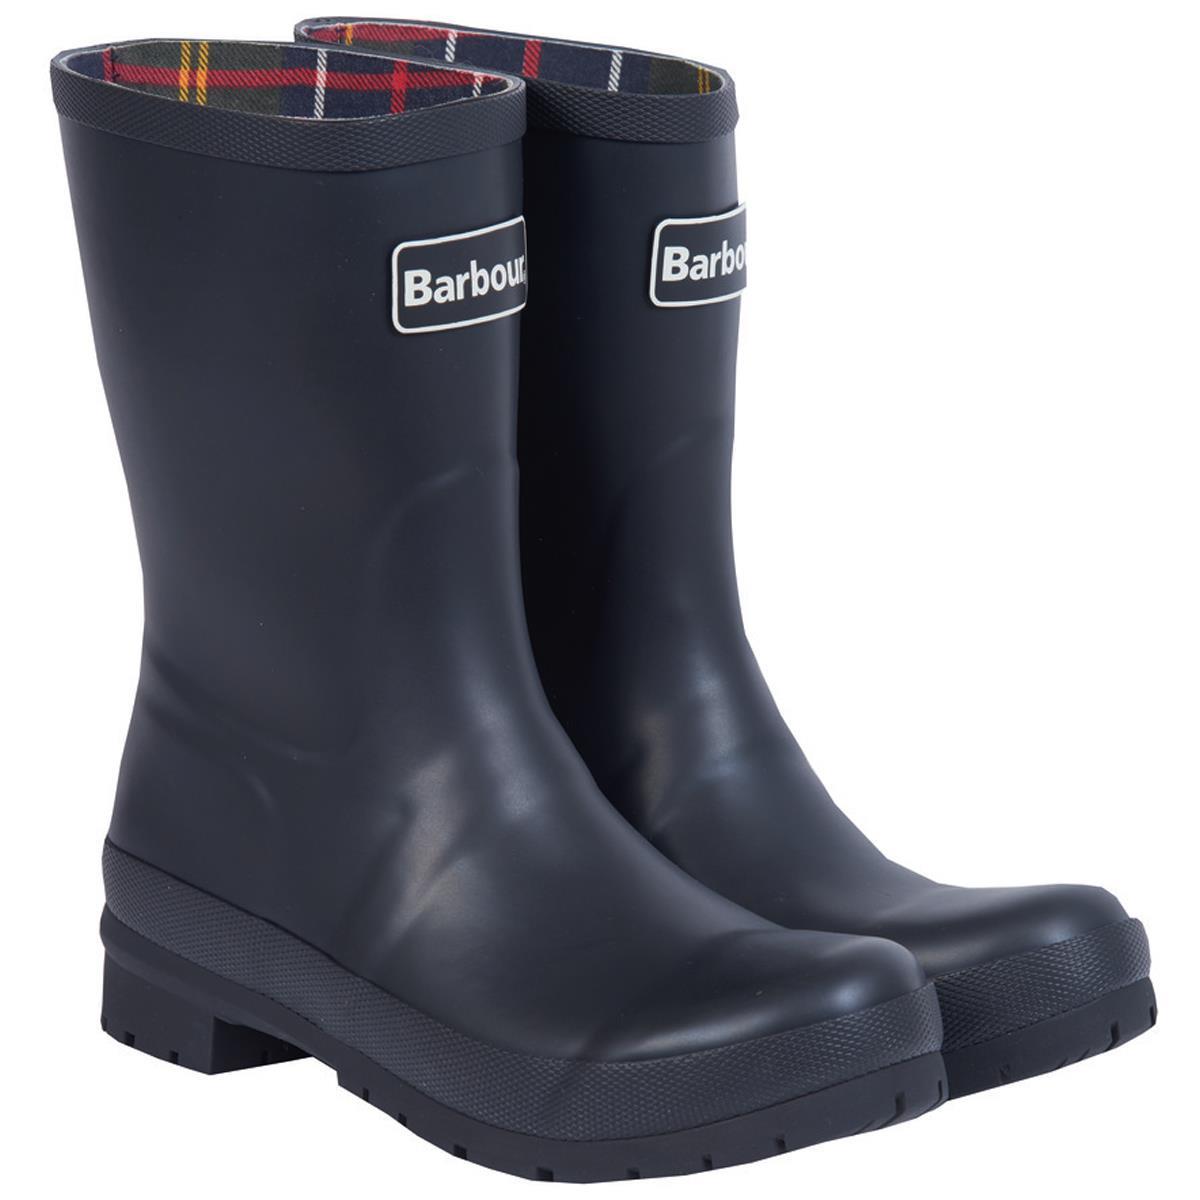 Barbour Womens Banbury Wellington Boots Black 8 (EU42)